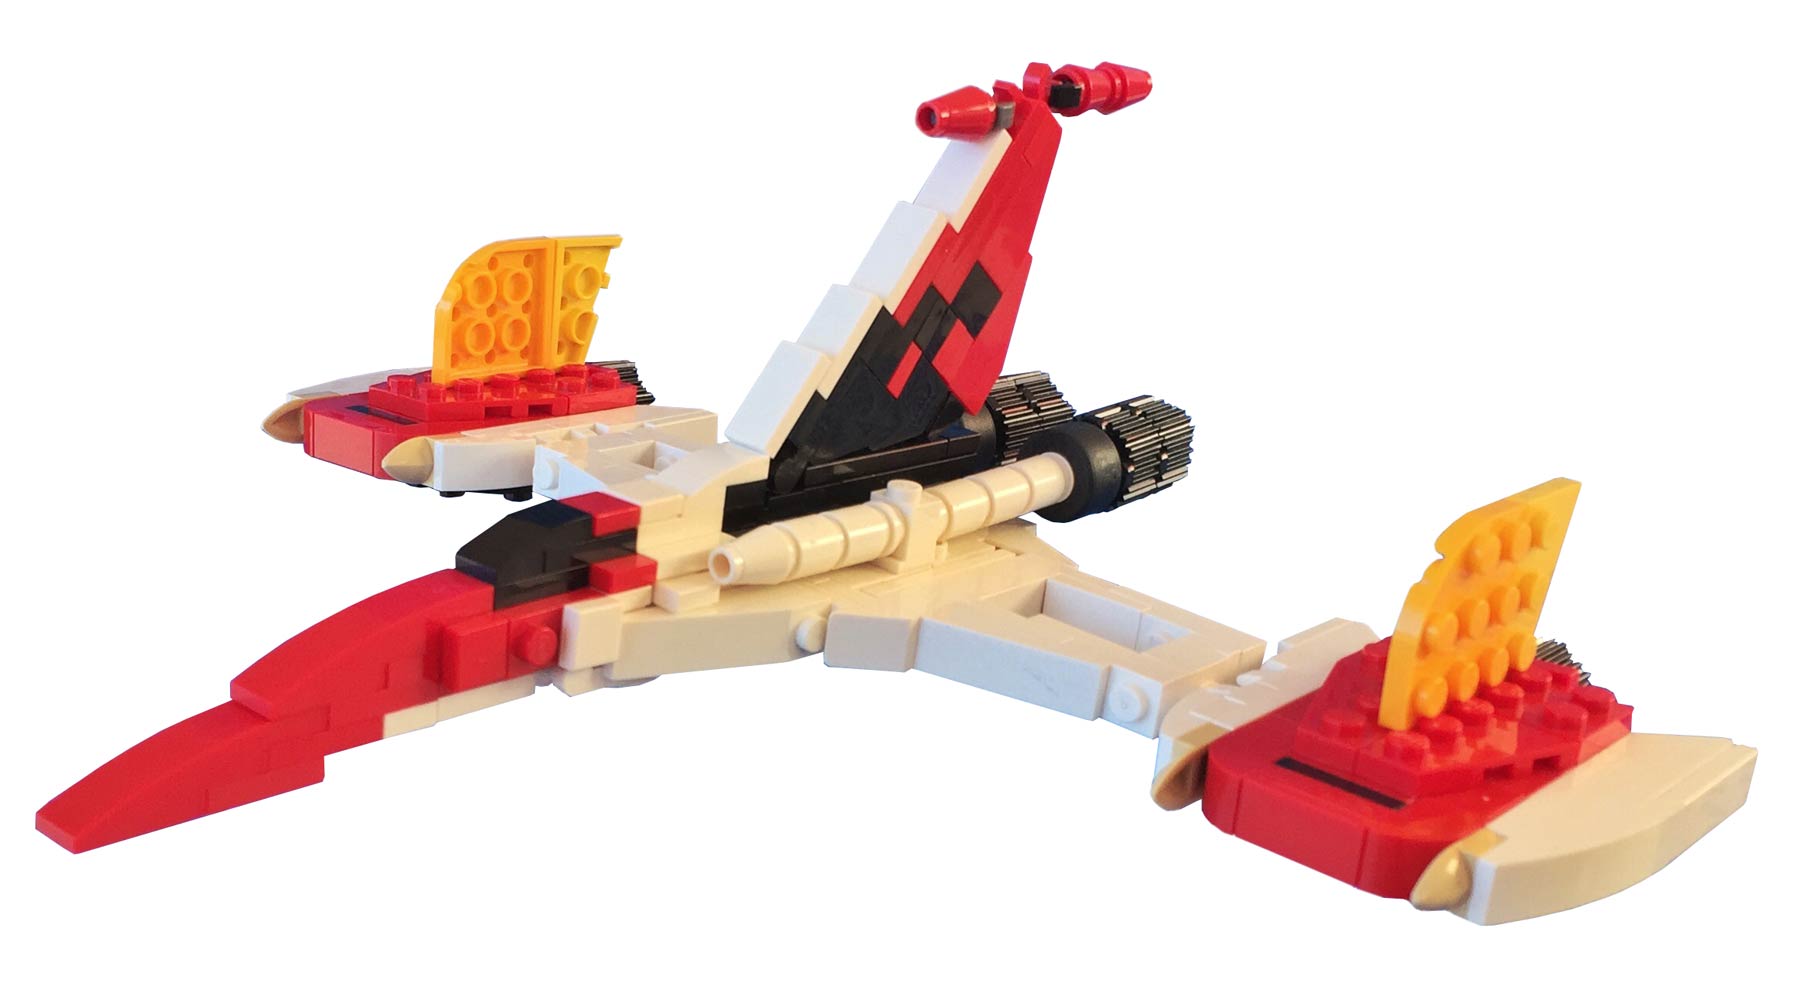 Goldorak et son alcorak maquette style Lego colle et peinture inutile 20  cms plaisir de créer un ensemble très rare